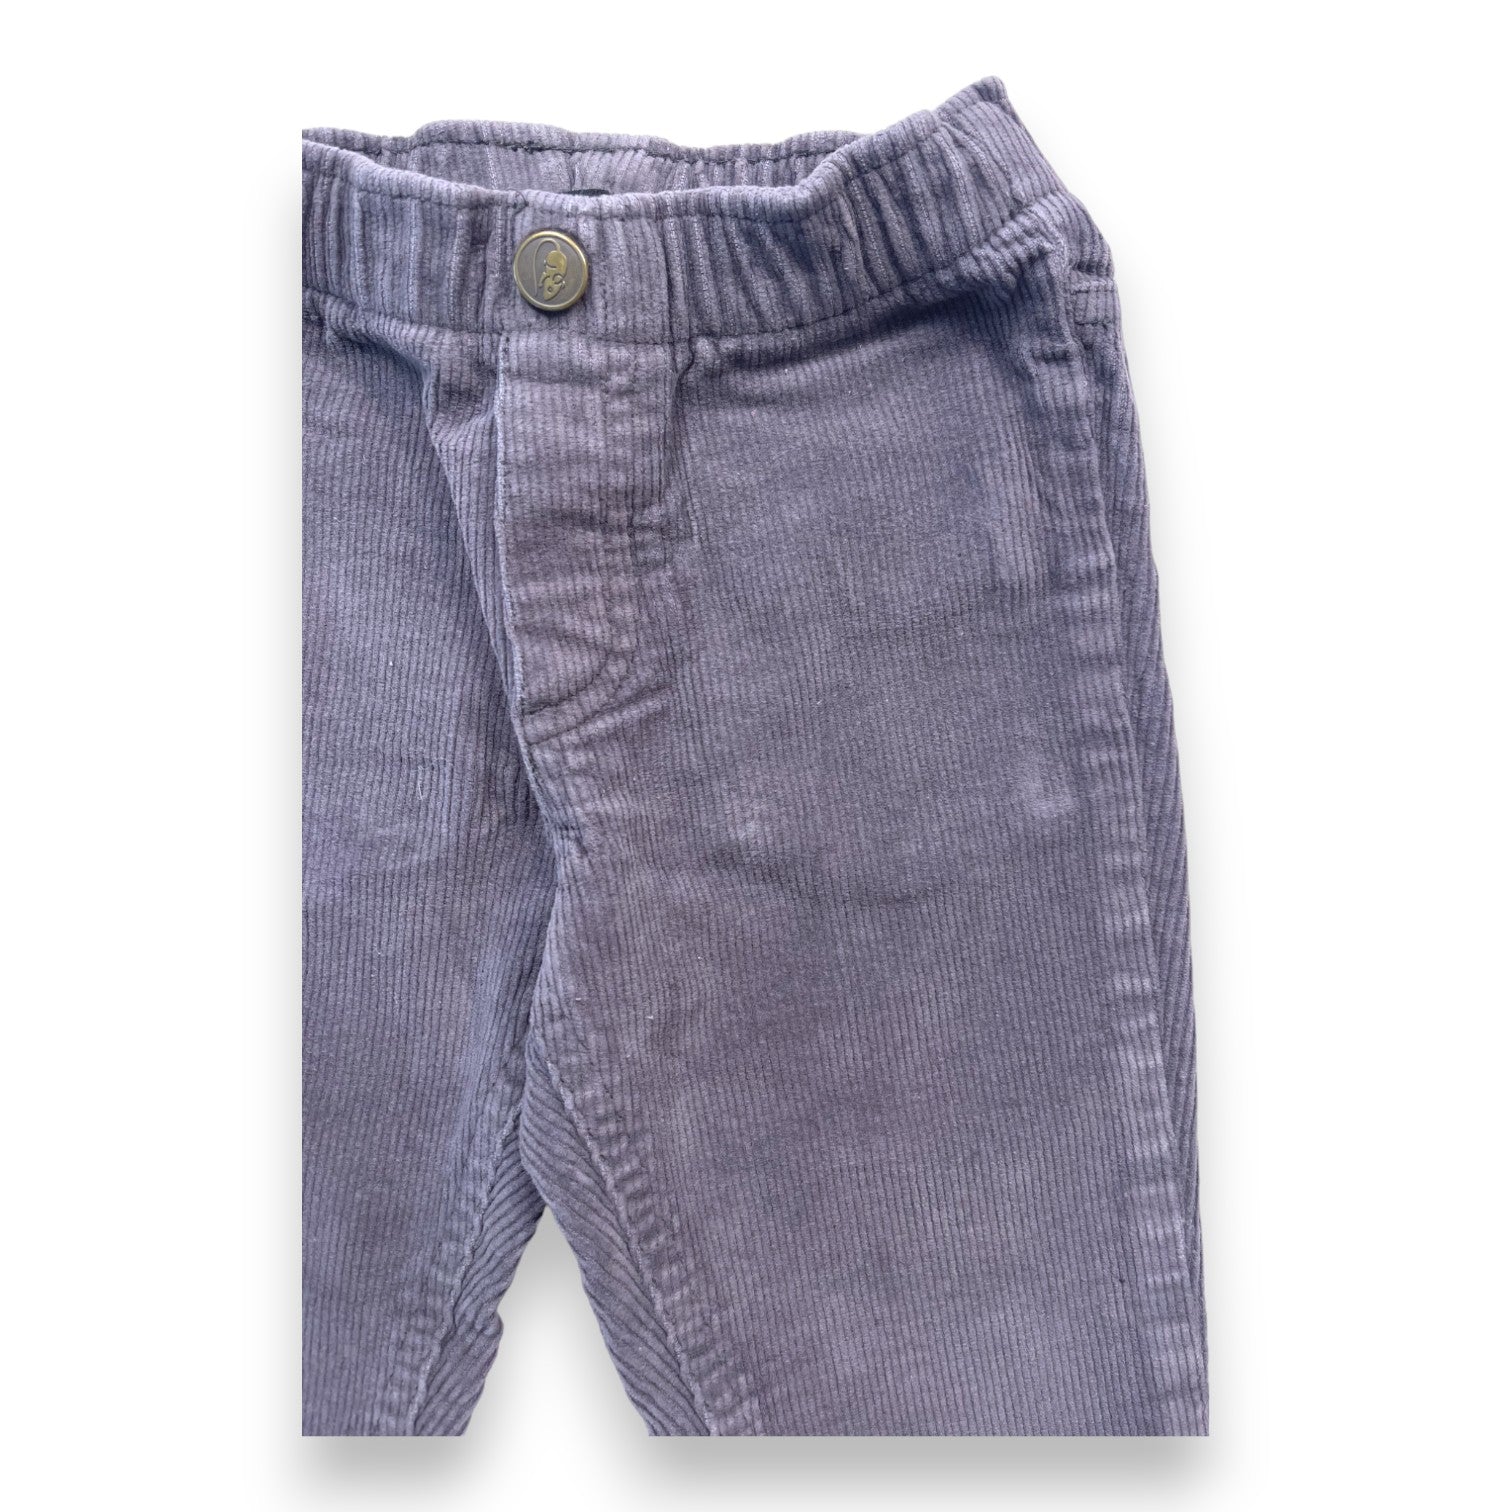 LITTLE MARC JACOBS - Pantalon gris en velours - 12 mois